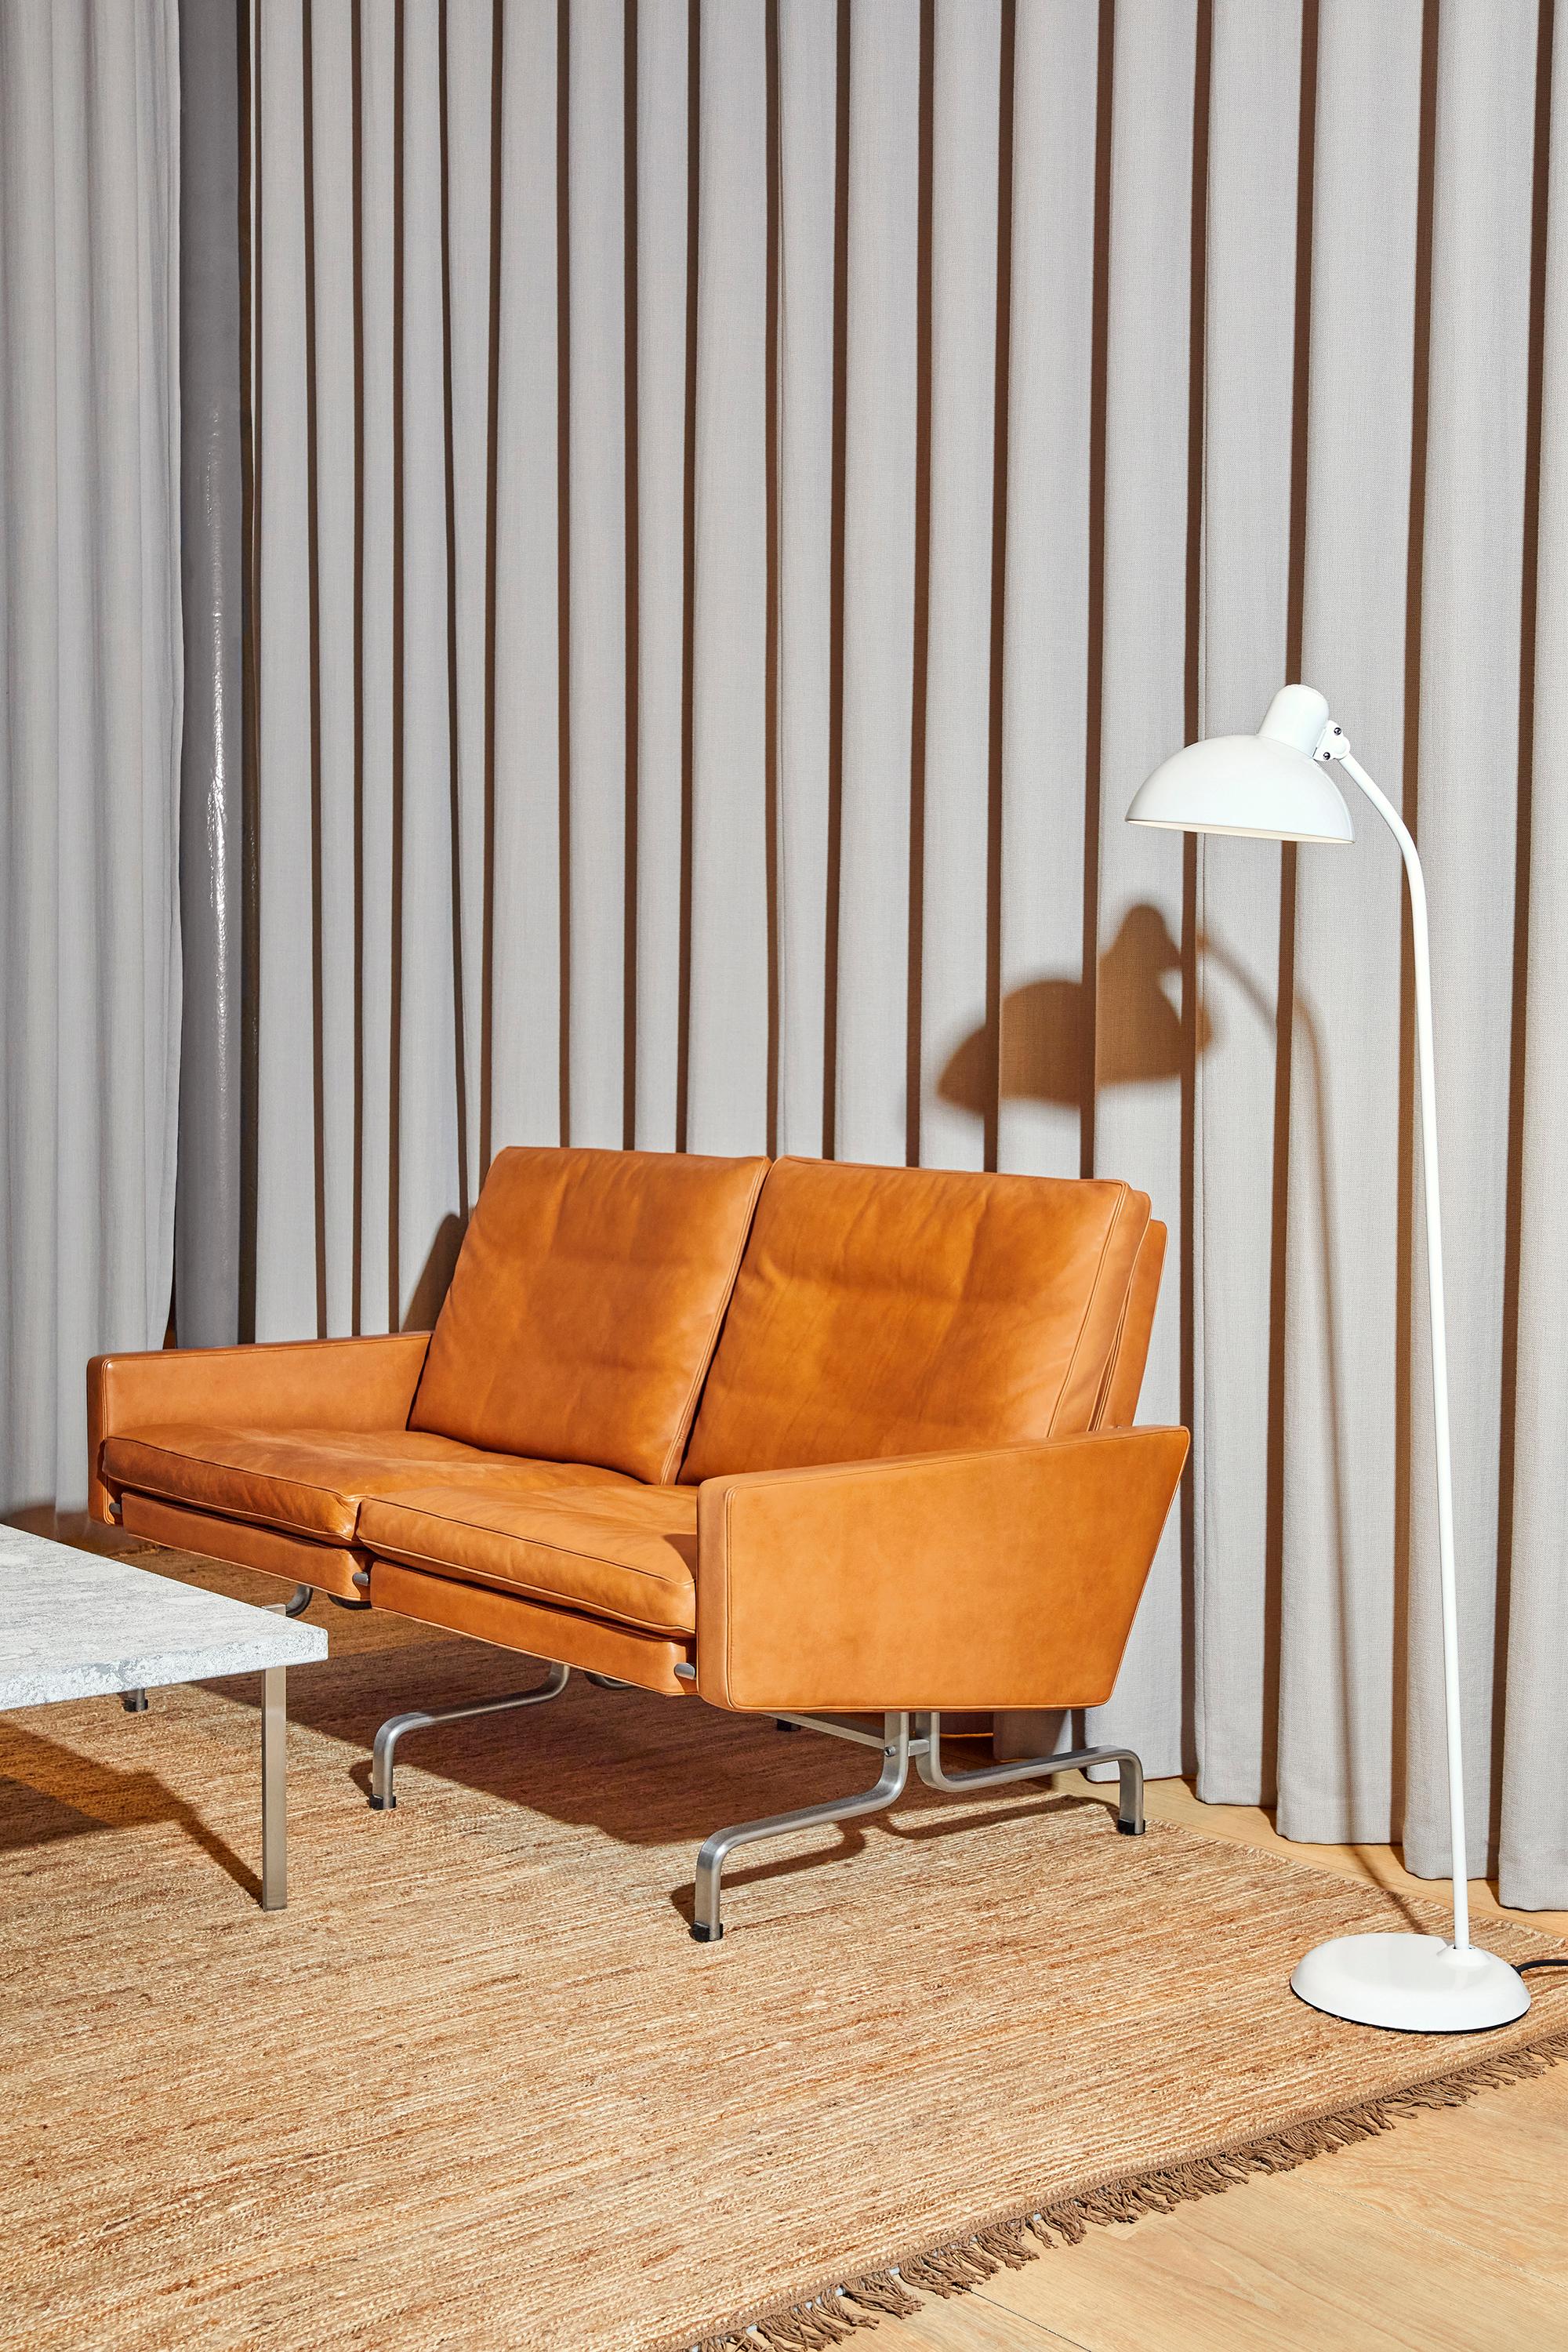 Poul Kjærholm 'PK31' 2-Sitzer Sofa für Fritz Hansen in Aura Leder

Fritz Hansen wurde 1872 gegründet und ist zum Synonym für legendäres dänisches Design geworden. Die Marke kombiniert zeitlose Handwerkskunst mit einem Schwerpunkt auf Nachhaltigkeit.